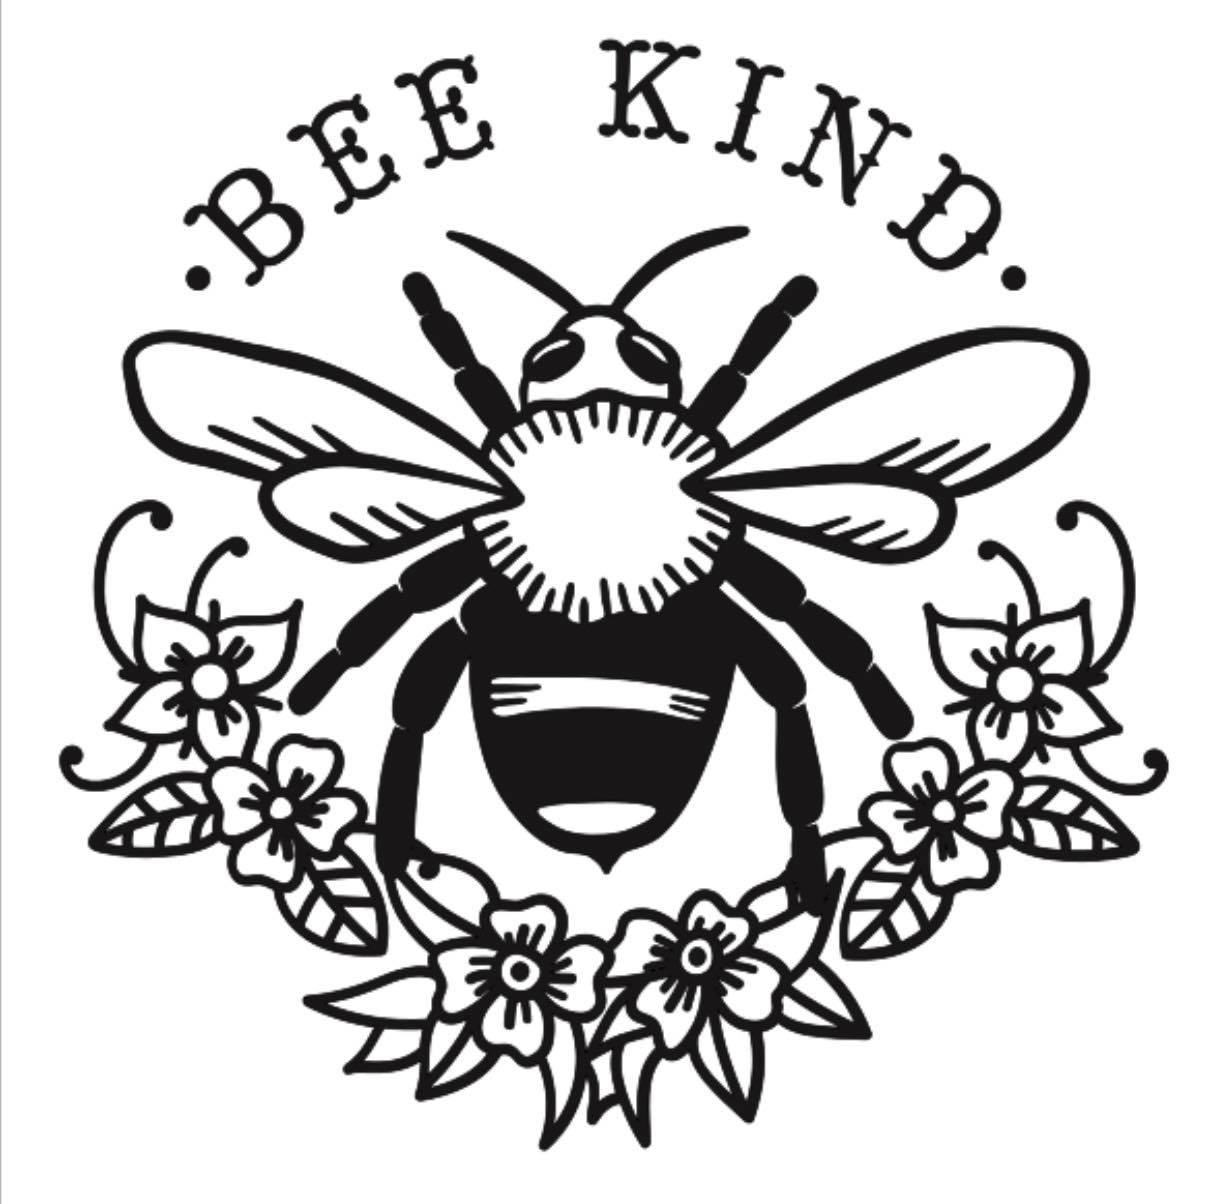 Bee Kind 12x12